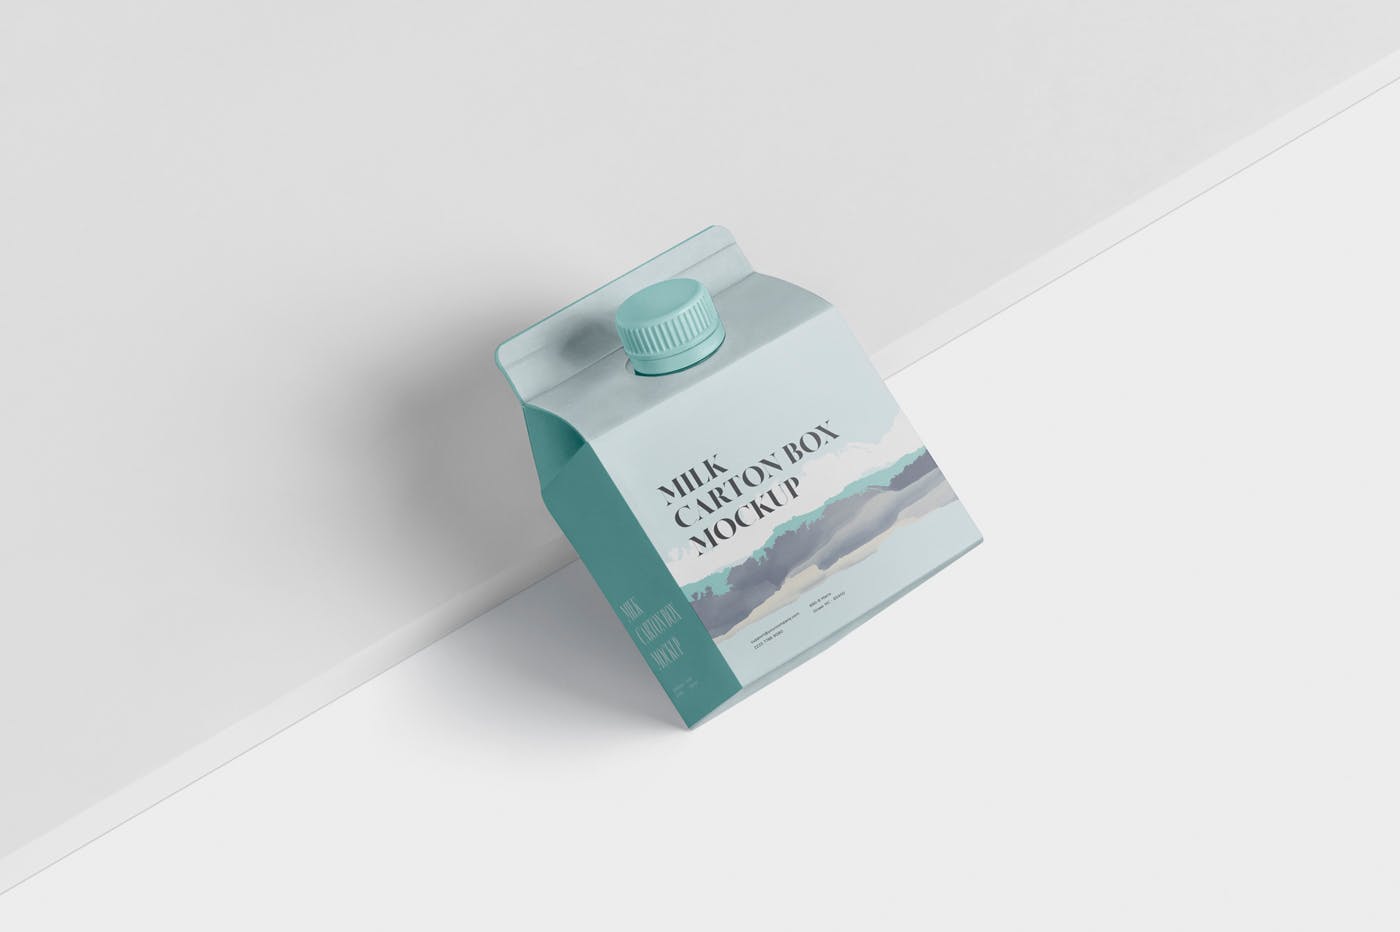 250毫升果汁/牛奶包装盒外观设计样机模板 Juice – Milk Mockup – 250ml Carton Box – small siz插图(2)